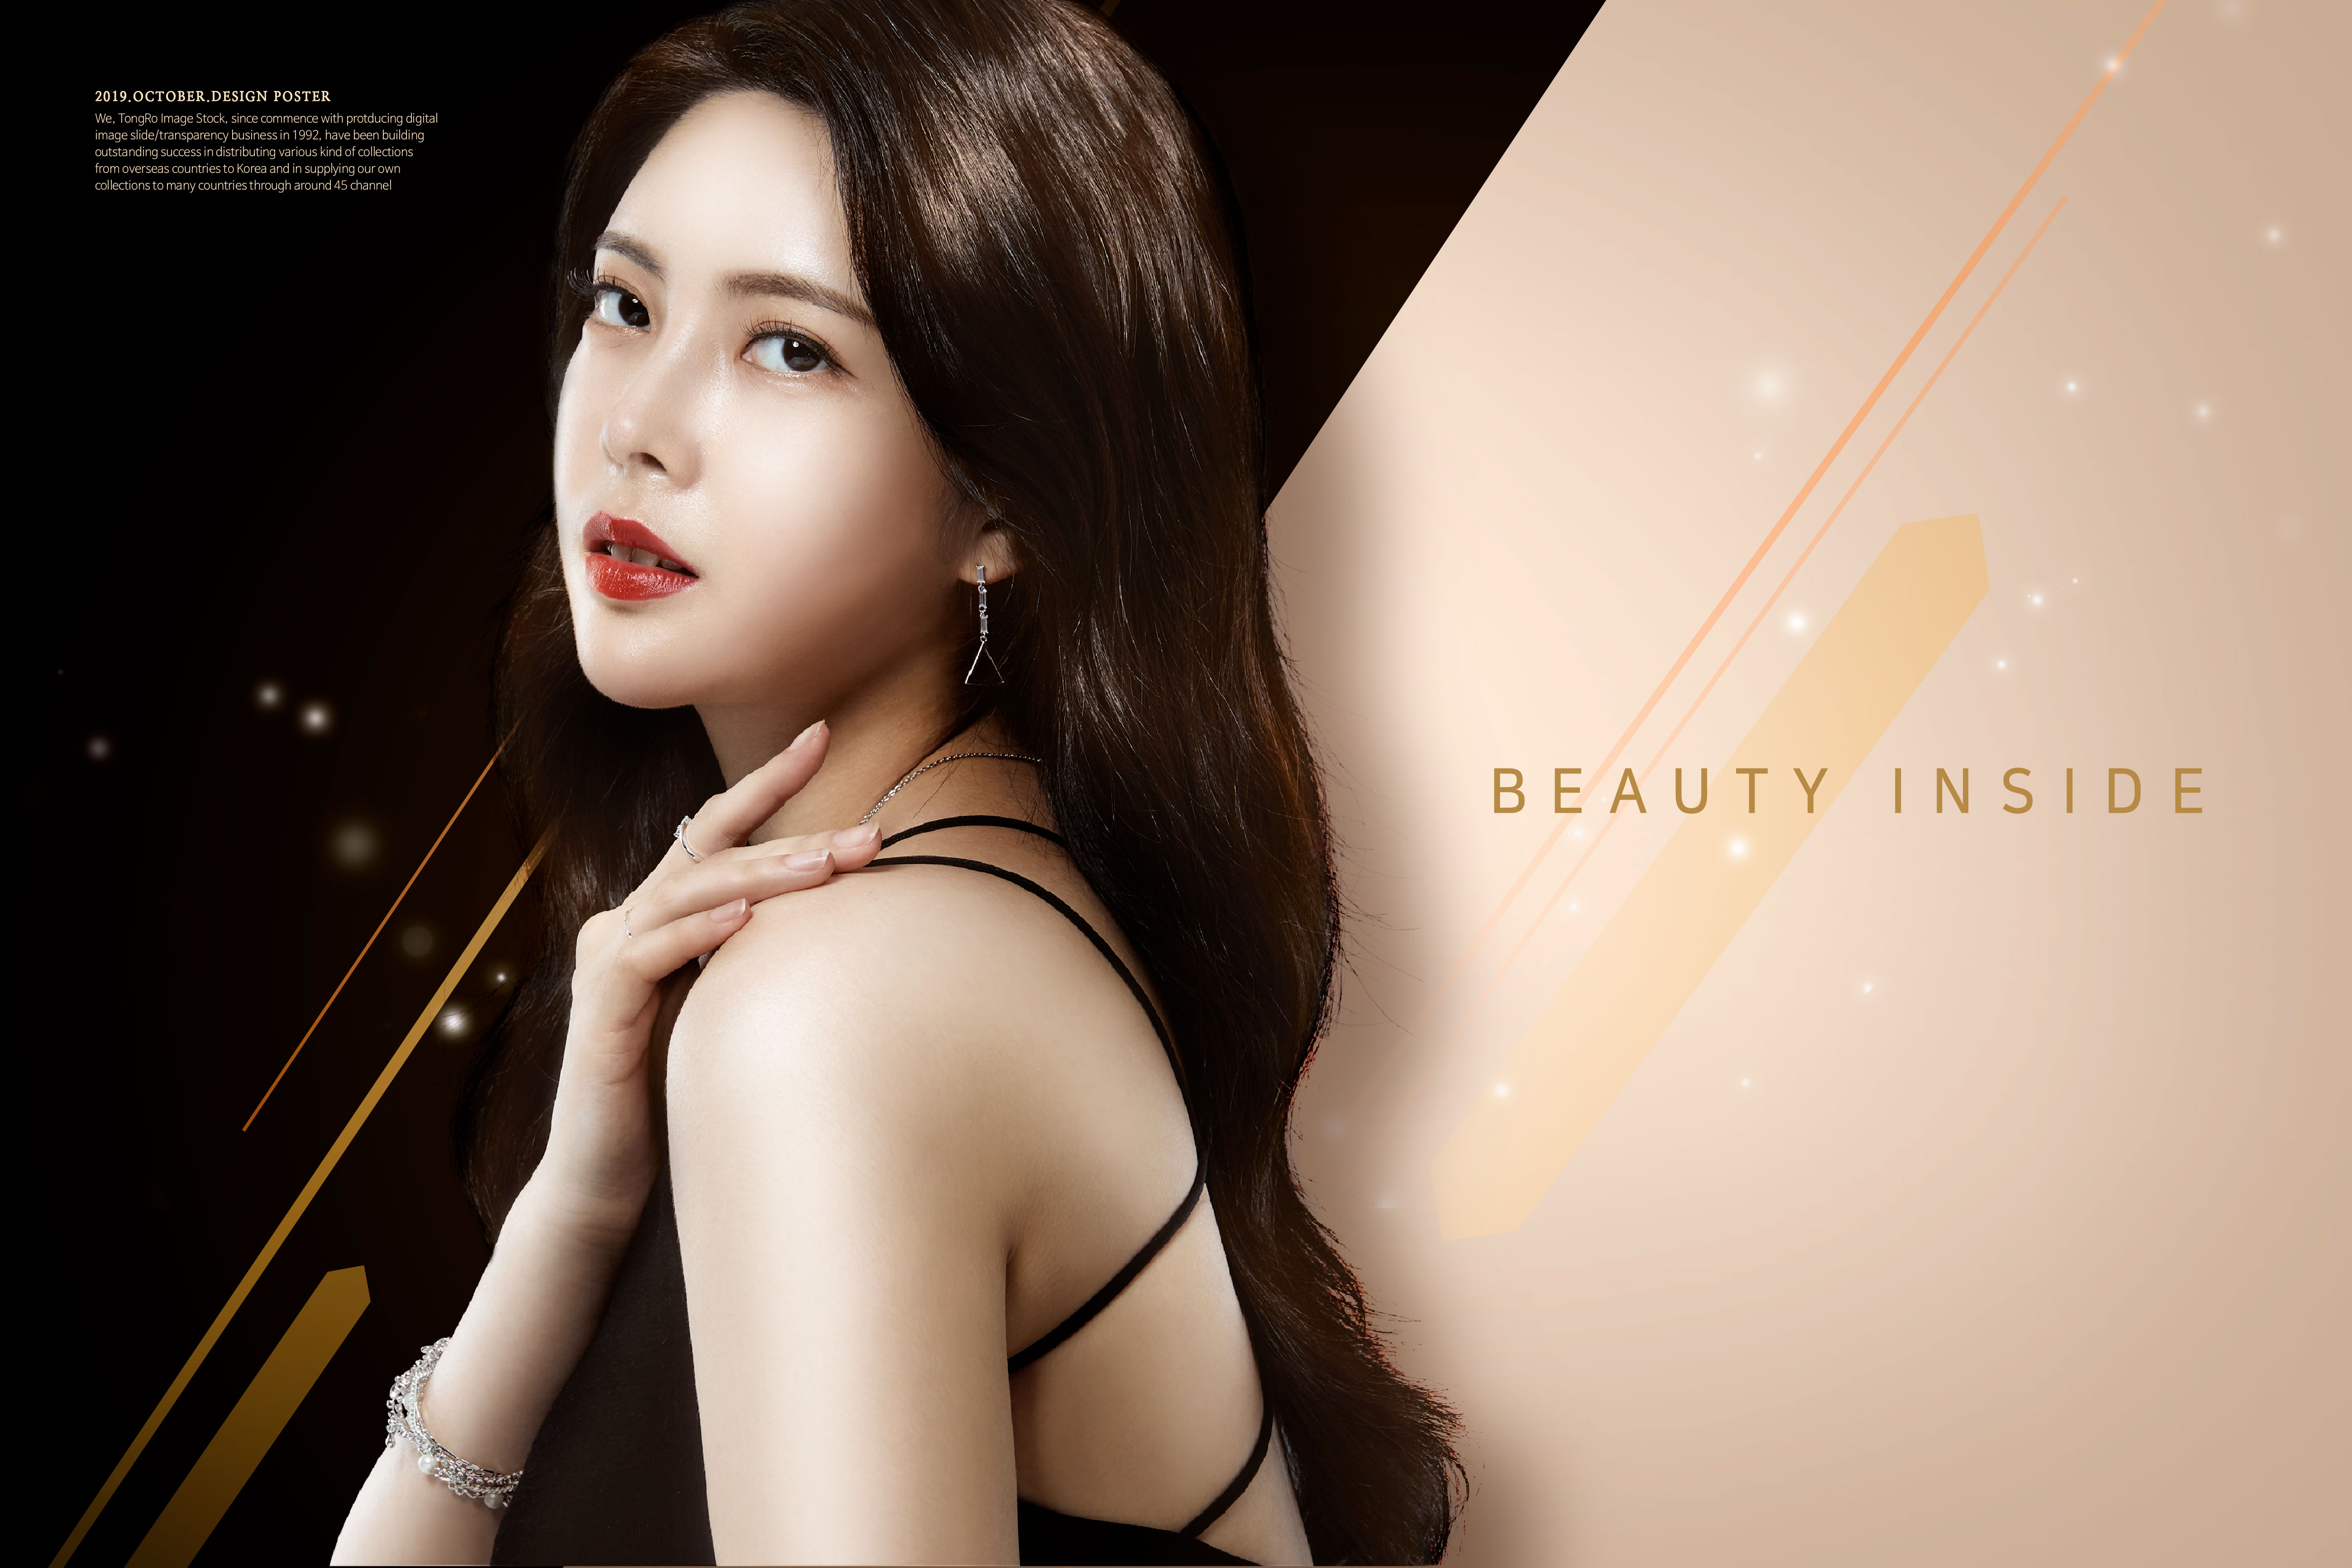 韩国气质美女美容化妆品广告海报模板套装[PSD]插图(5)